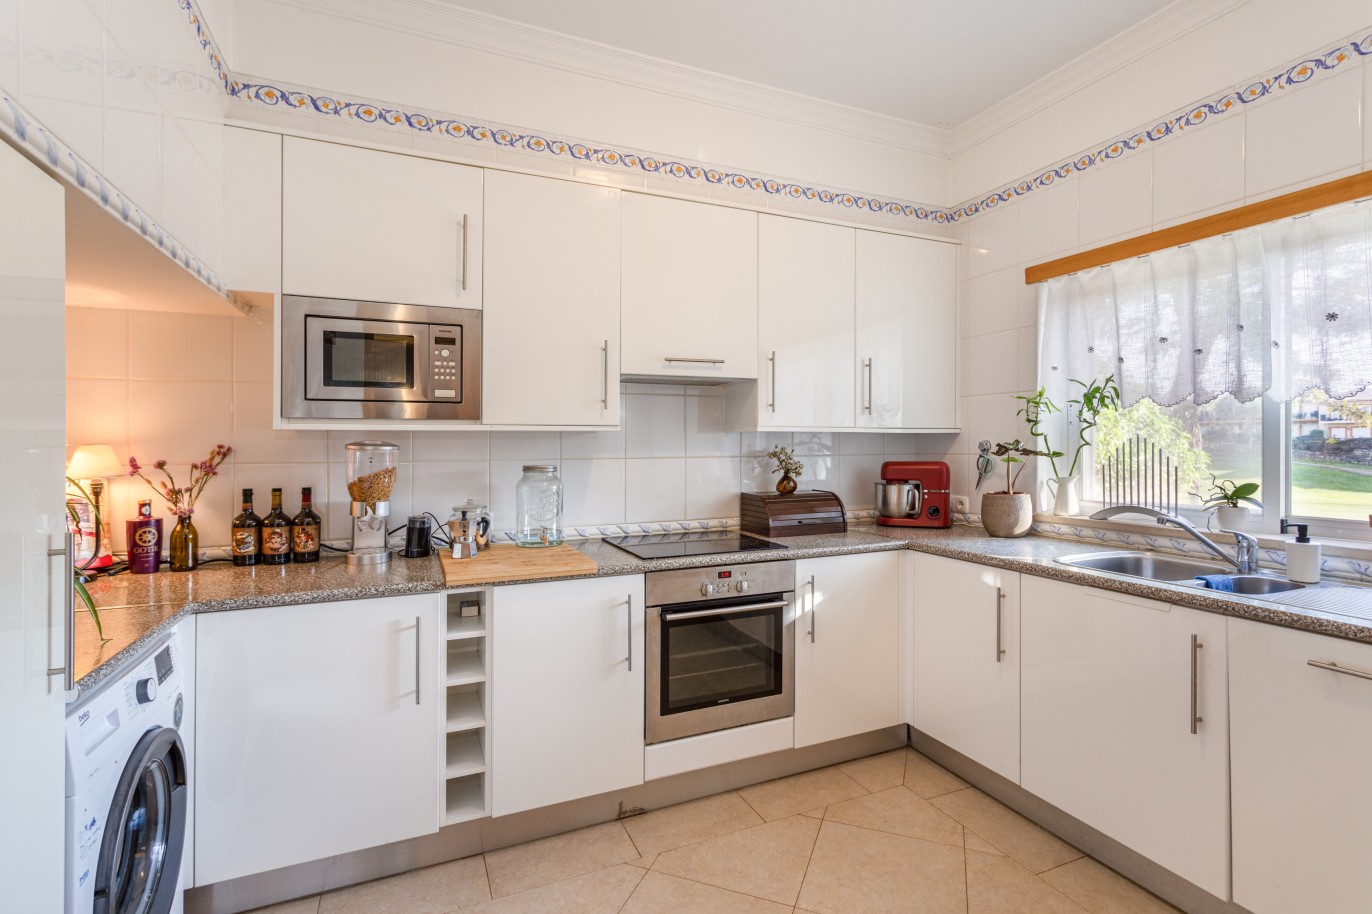 Villa mit 3 Schlafzimmern, in privater Wohnanlage, zu verkaufen in Lagos, Algarve_246270